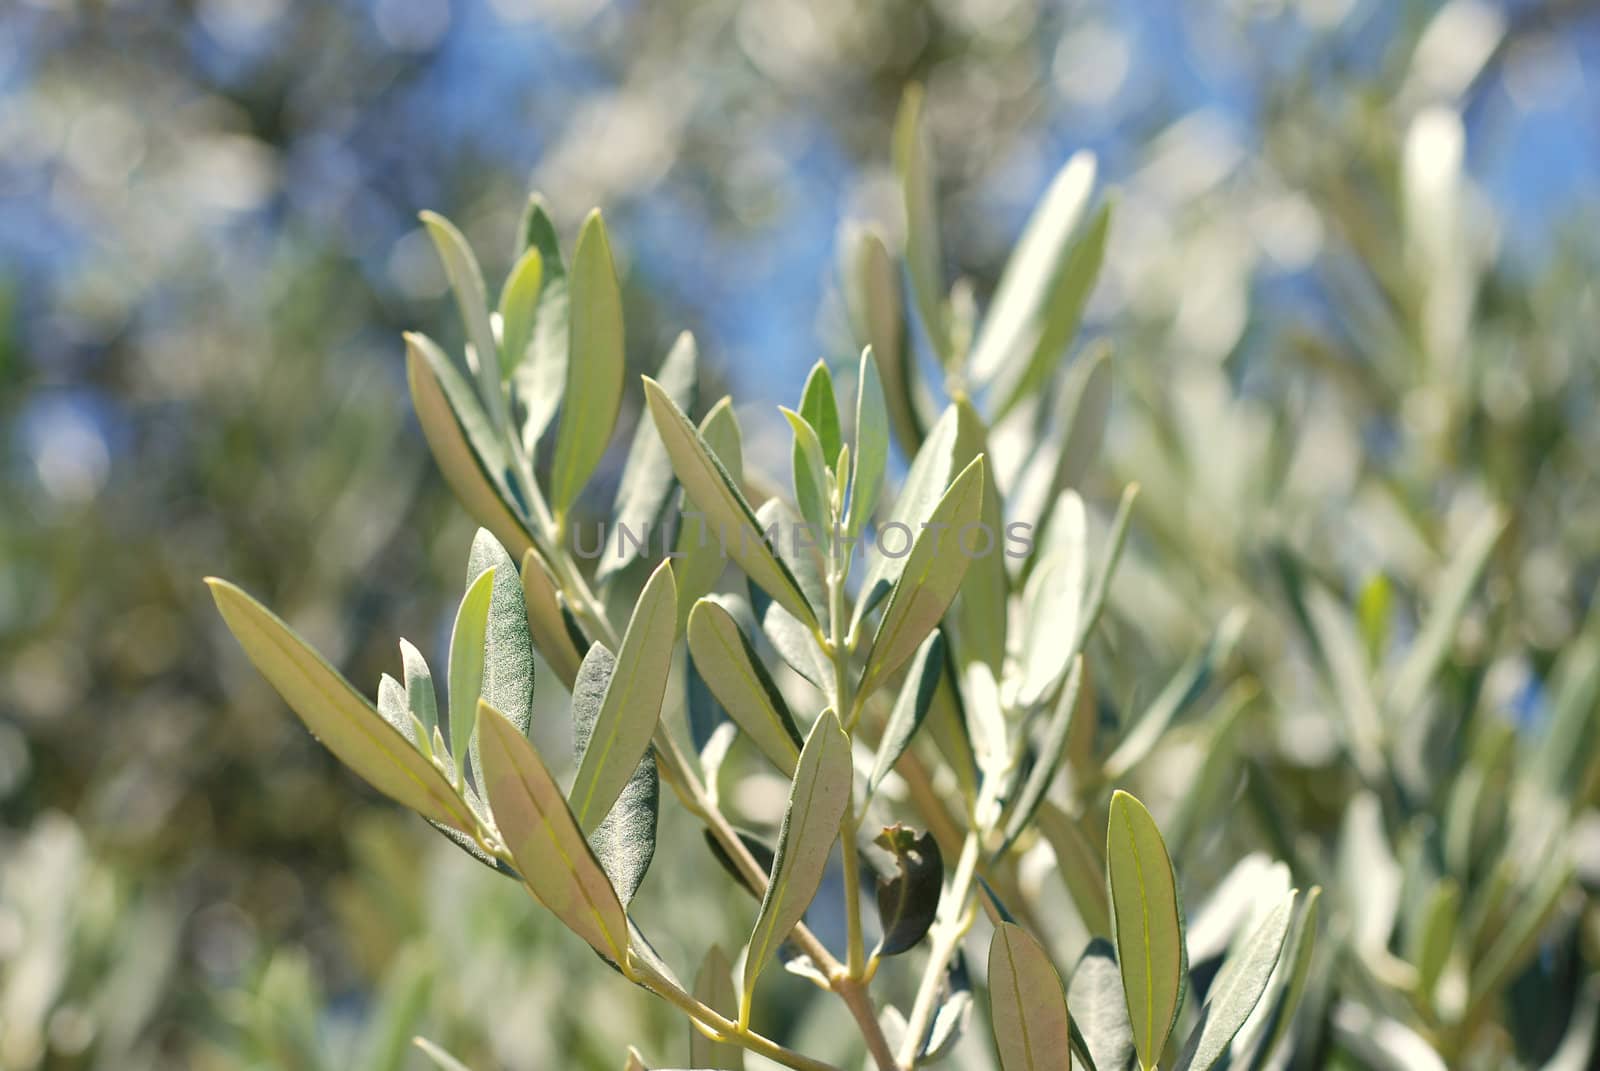 An olive branch. by wojciechkozlowski